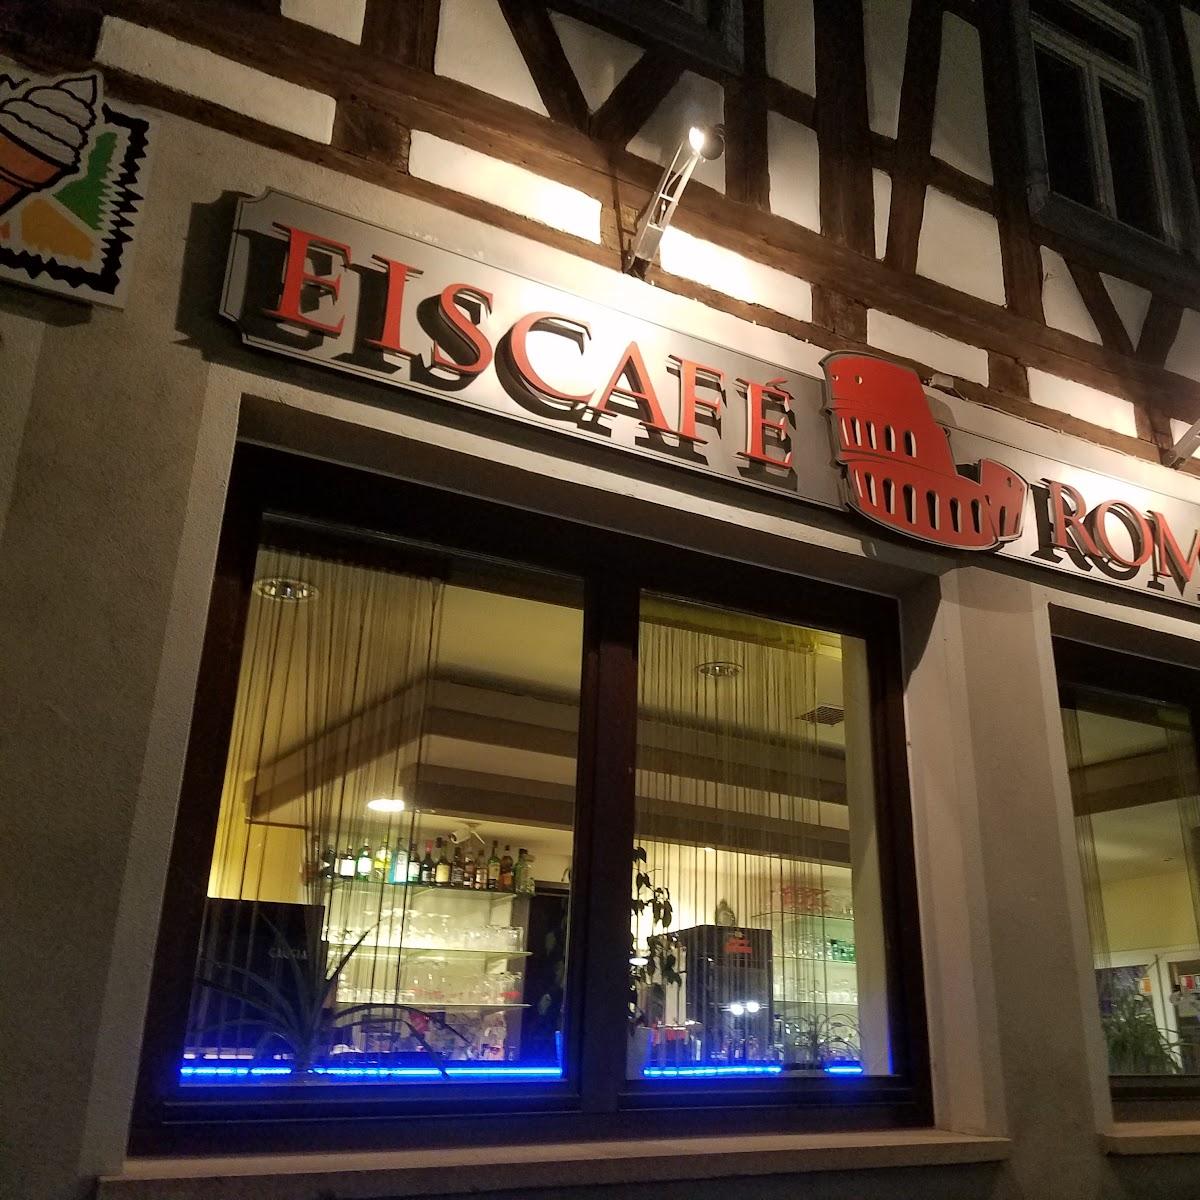 Restaurant "Eiscafé Roma Sulz" in Sulz am Neckar